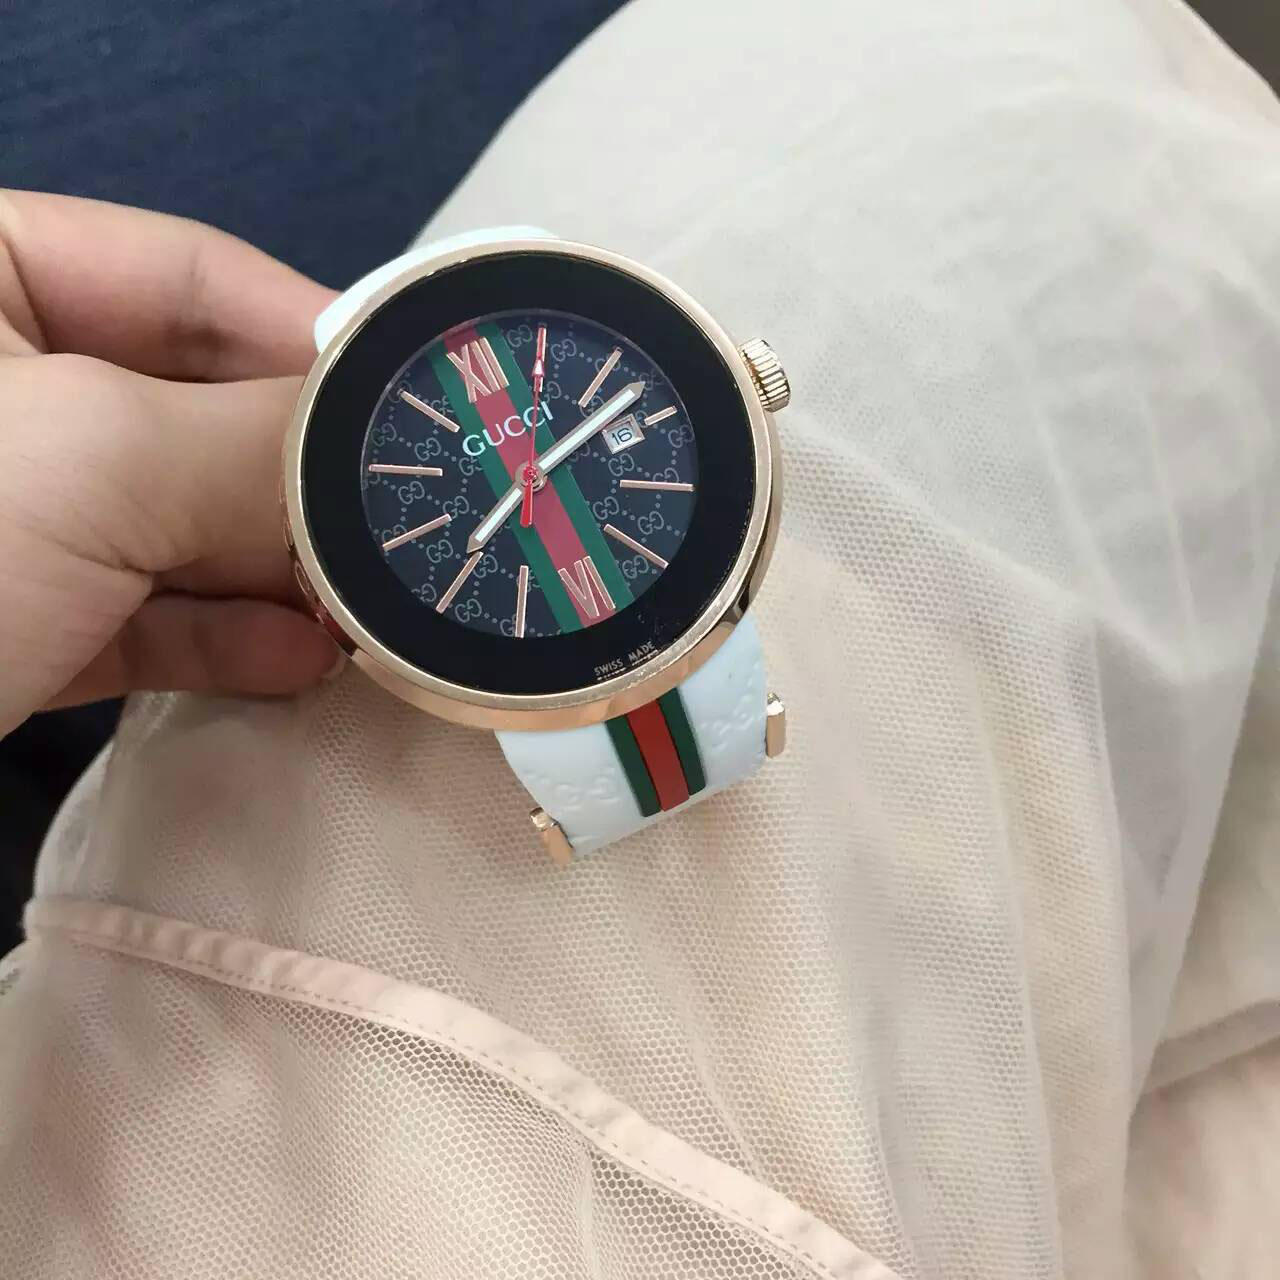 古馳 Gucci 最新推出最高版本男士腕錶